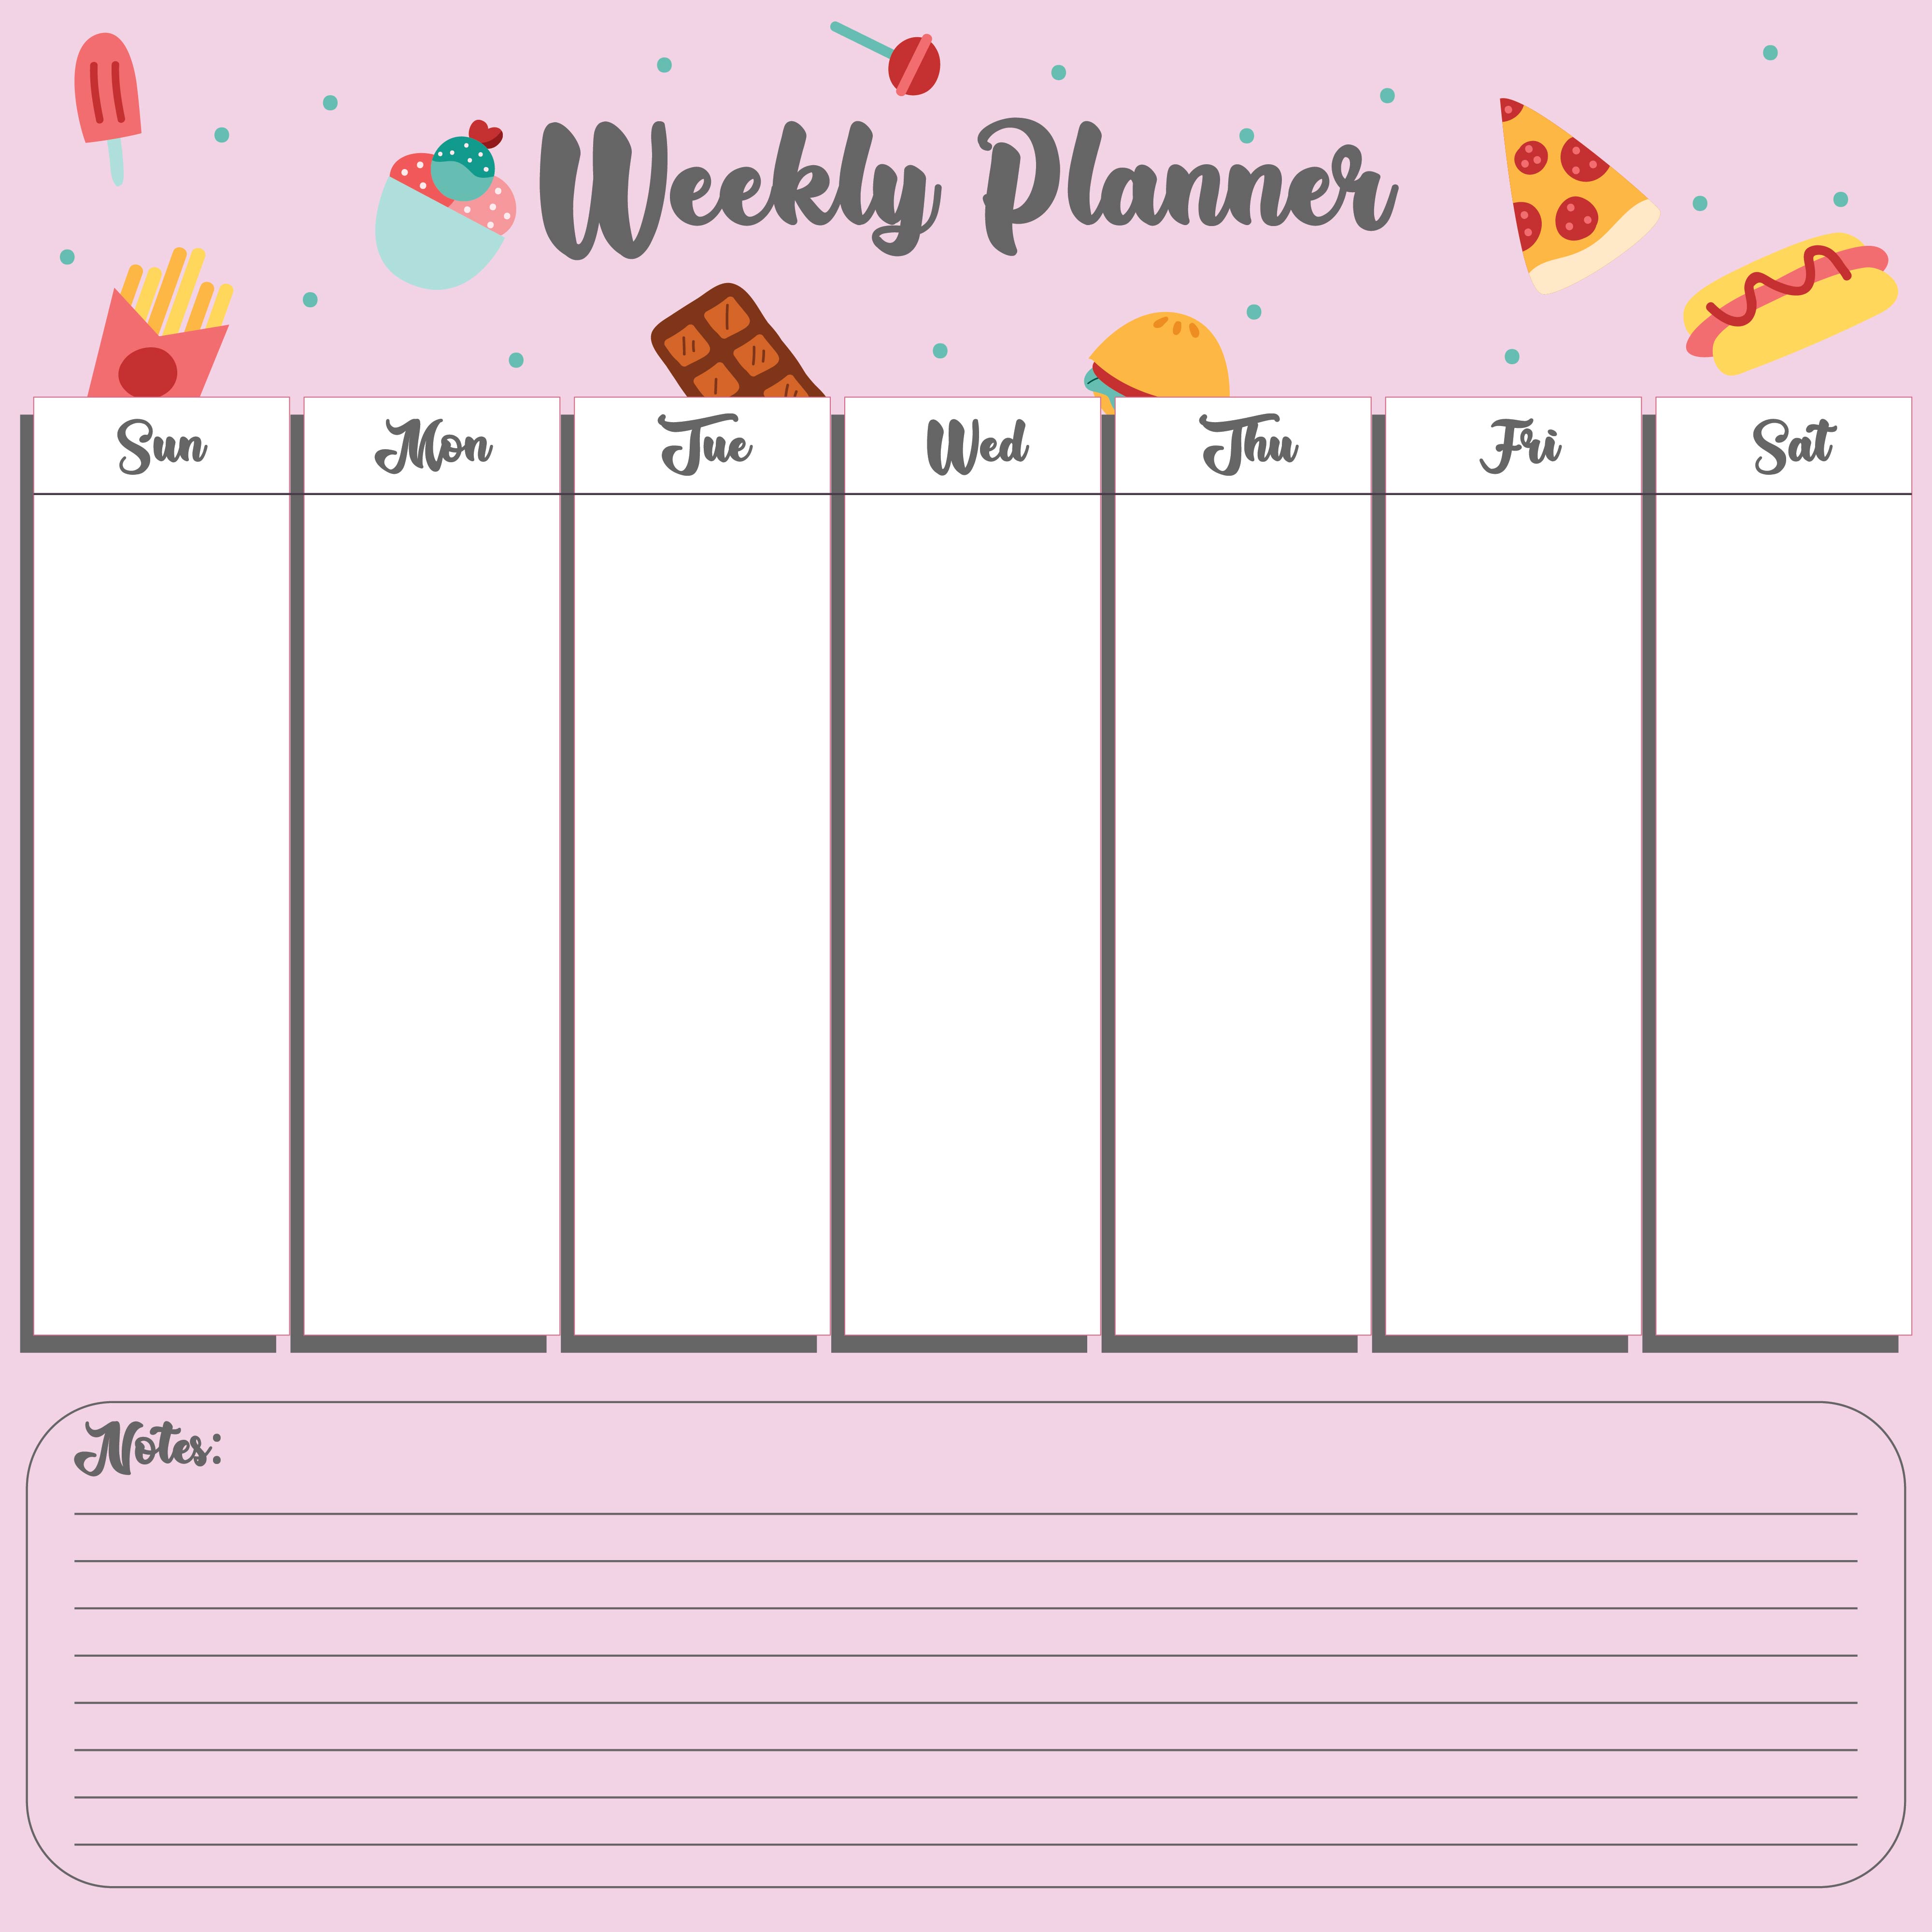 Best Images Of Weekly Planner Printable Pdf Weekly Planner Template